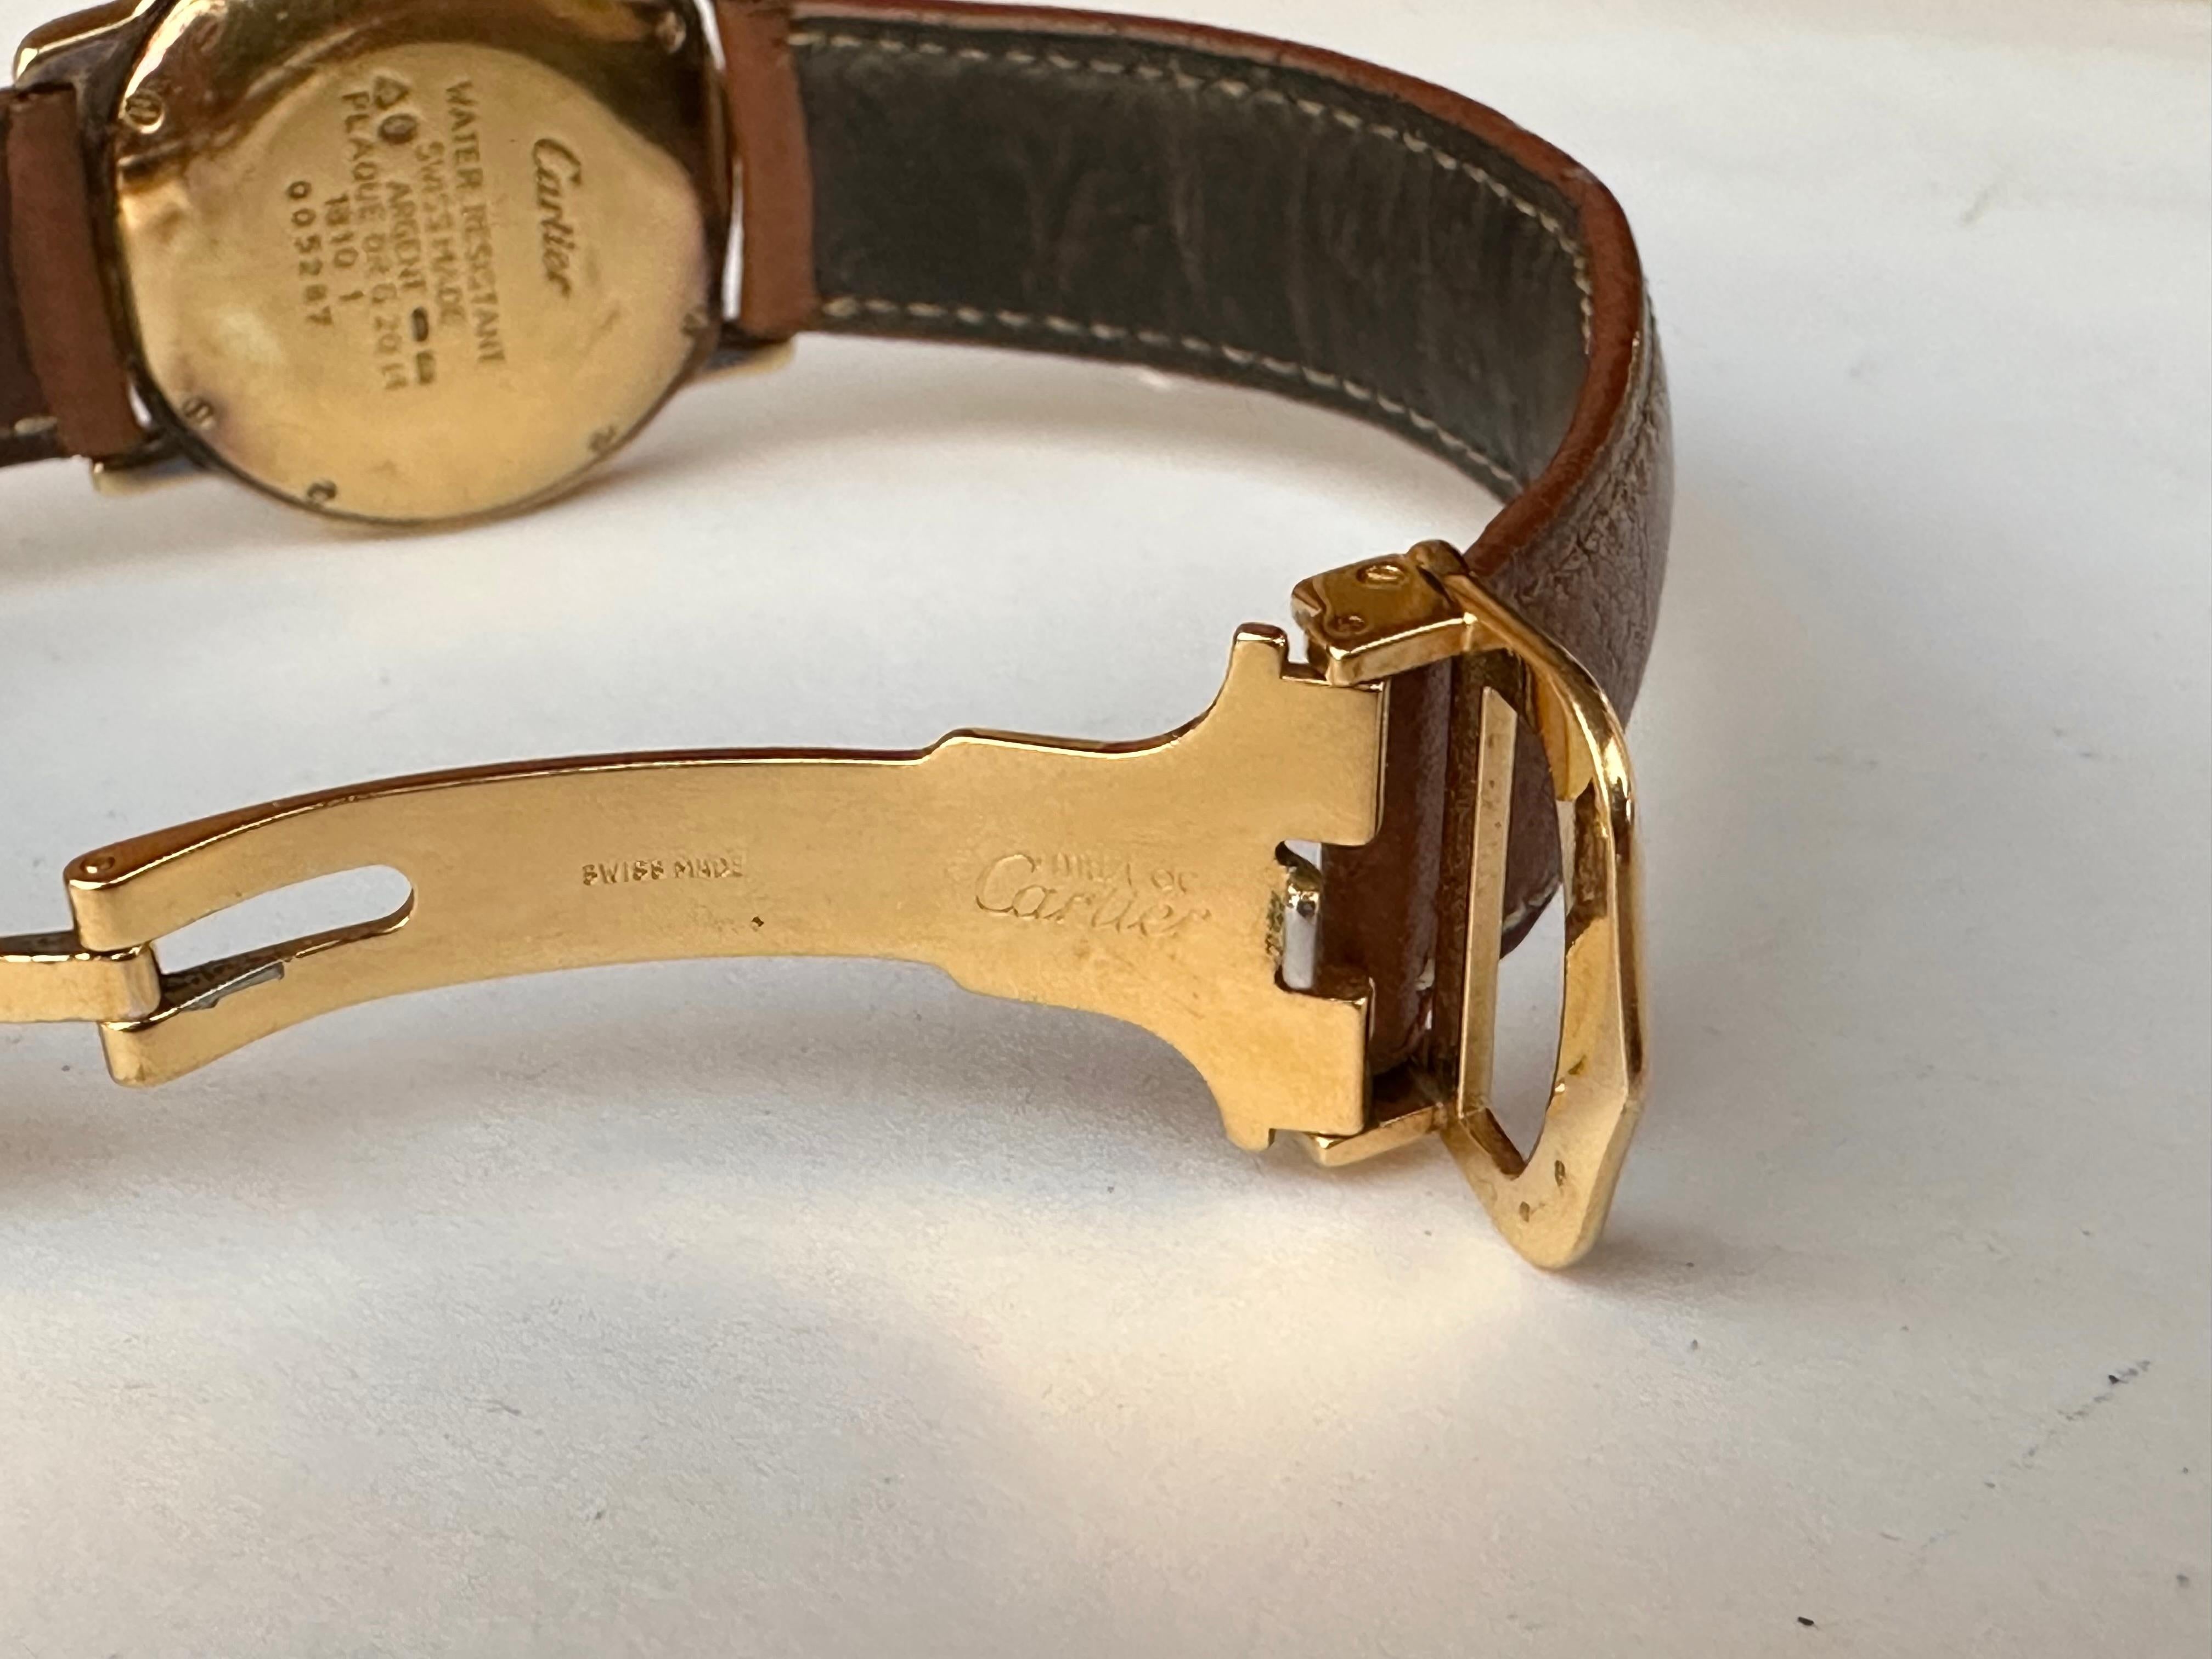 1810 wrist watch